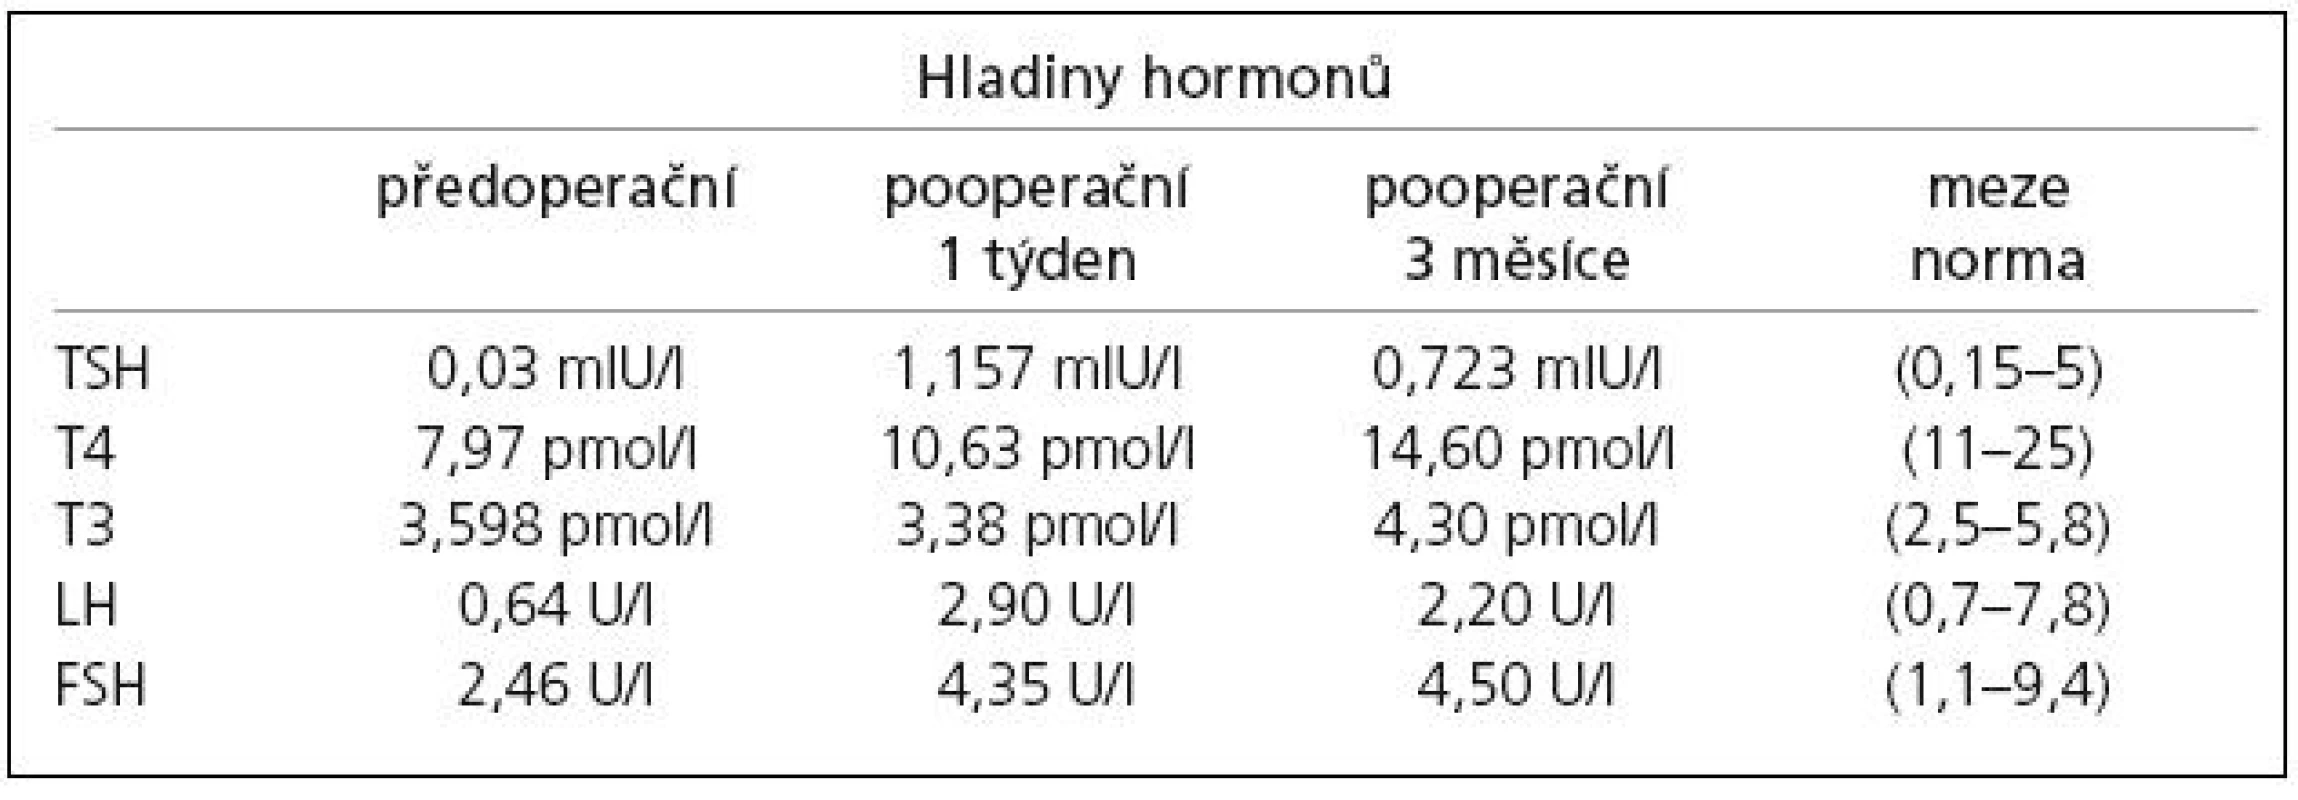 Změny hladiny hypofyzárních hormonů, předoperačně a v pooperačním průběhu: tyreotropní hormon (TSH), tyroxin (T4), trijodtyronin (T3), folikulostimulující hormon (FSH), luteotropní hormon (LH).